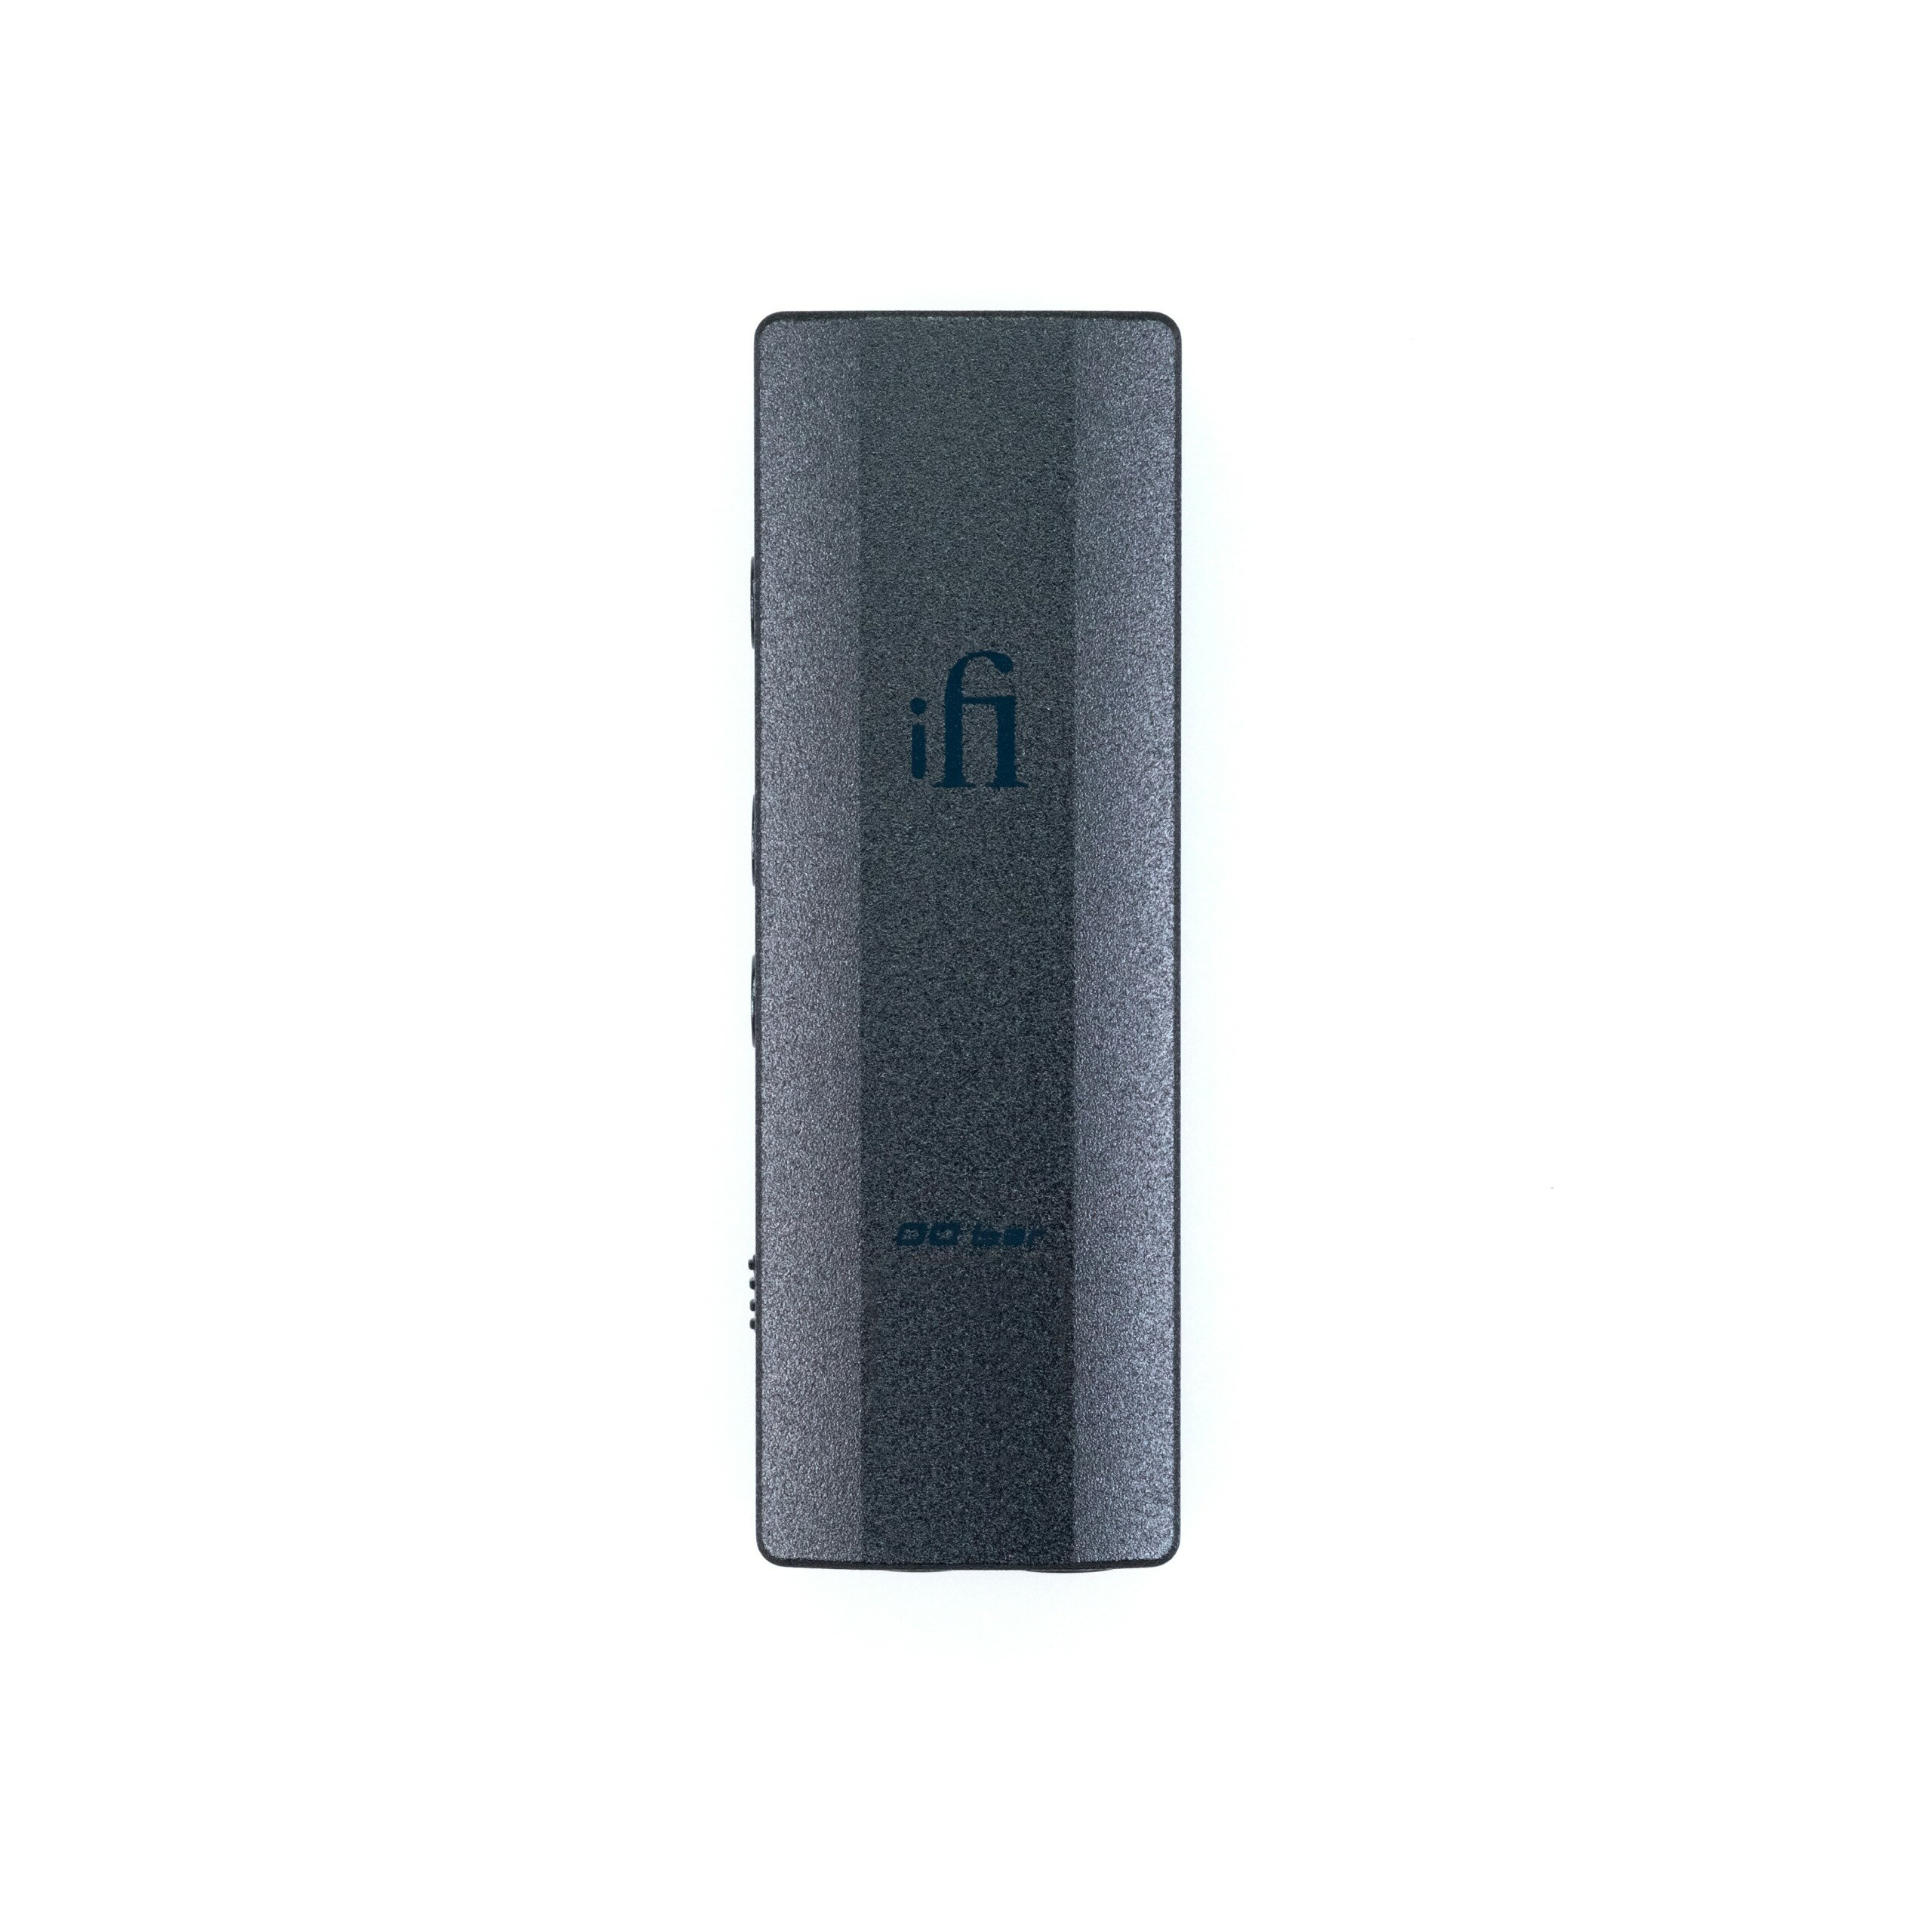 iFi audio GO bar（ゴー バー） スティック型USB-DACアンプ ポケットサイズ ハイレゾ対応 トゥルーバランス回路設計 超低ノイズ ヘッドフォン出力 PCM32bit/384kHz DSD256 MQAフルデコード【国内正規品】